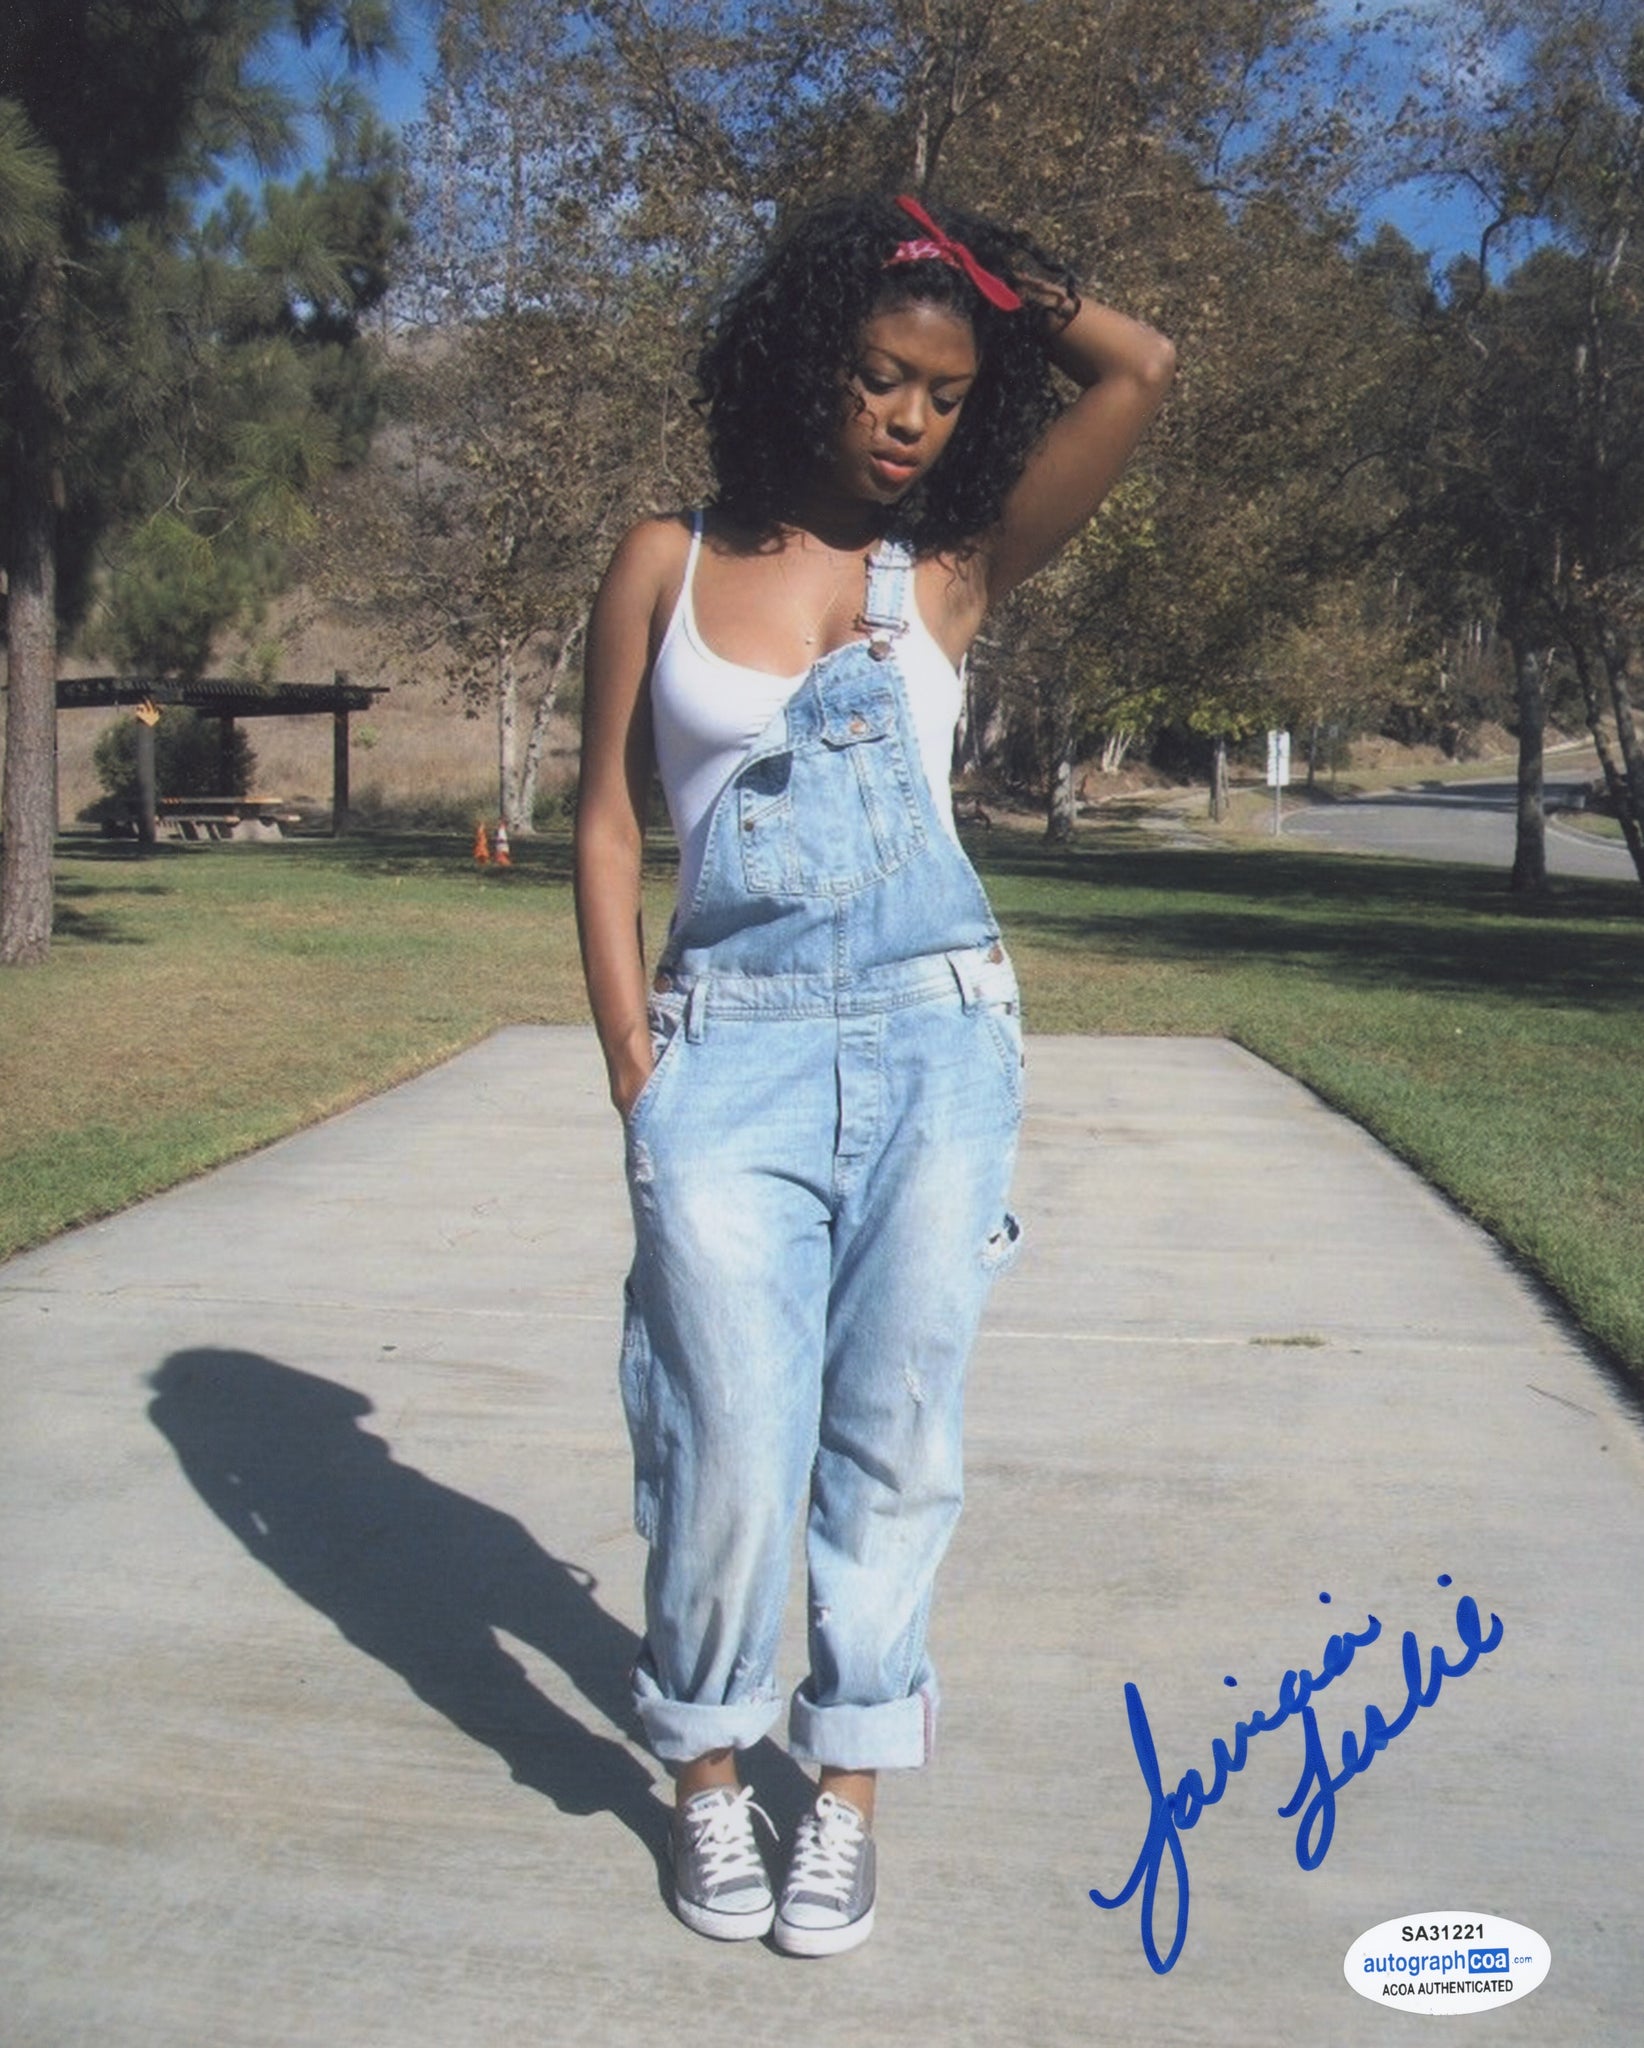 Javicia Leslie Batwoman Signed Autograph 8x10 Photo ACOA #6 - Outlaw Hobbies Authentic Autographs